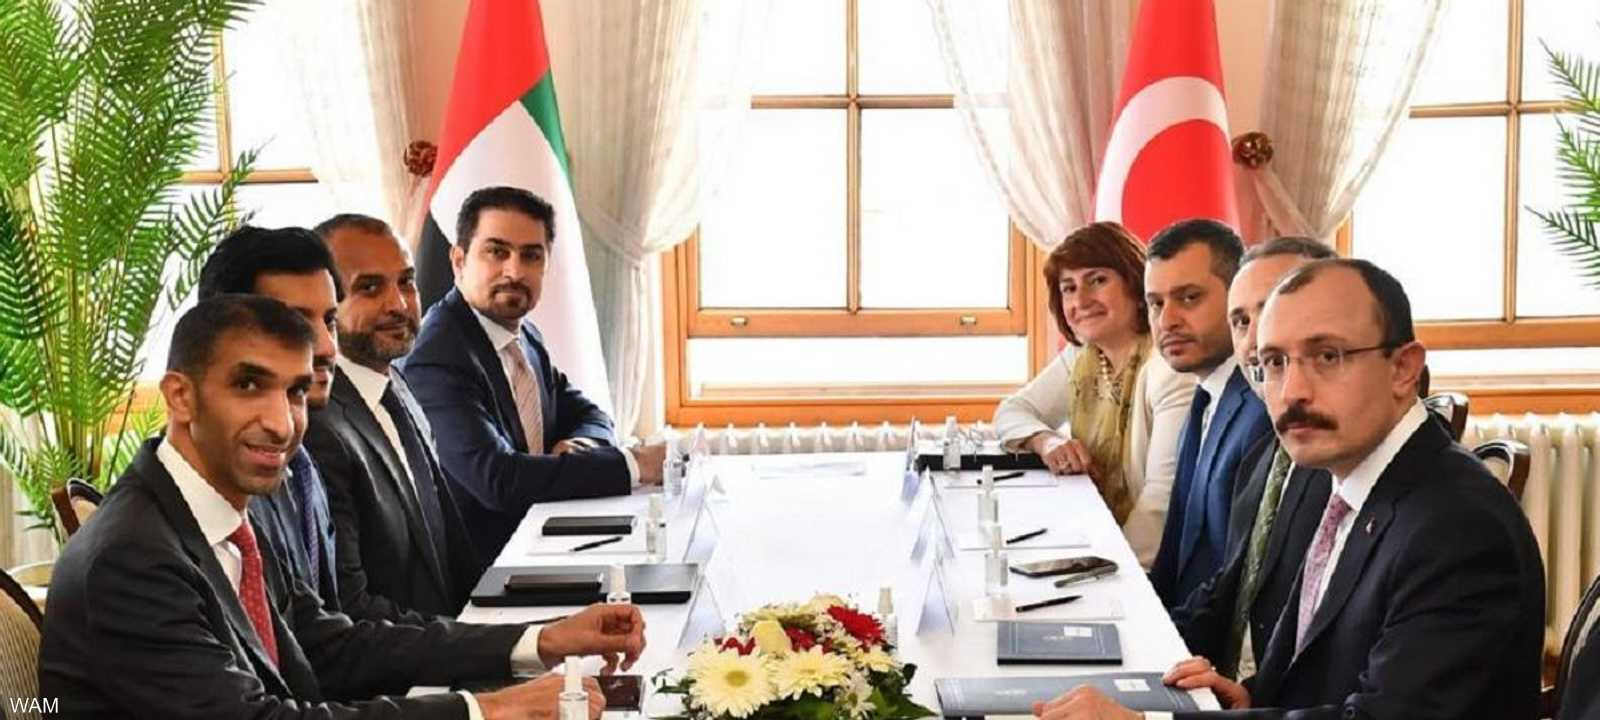 الإمارات وتركيا تناقشان اتفاقية الشراكة الاقتصادية الشاملة